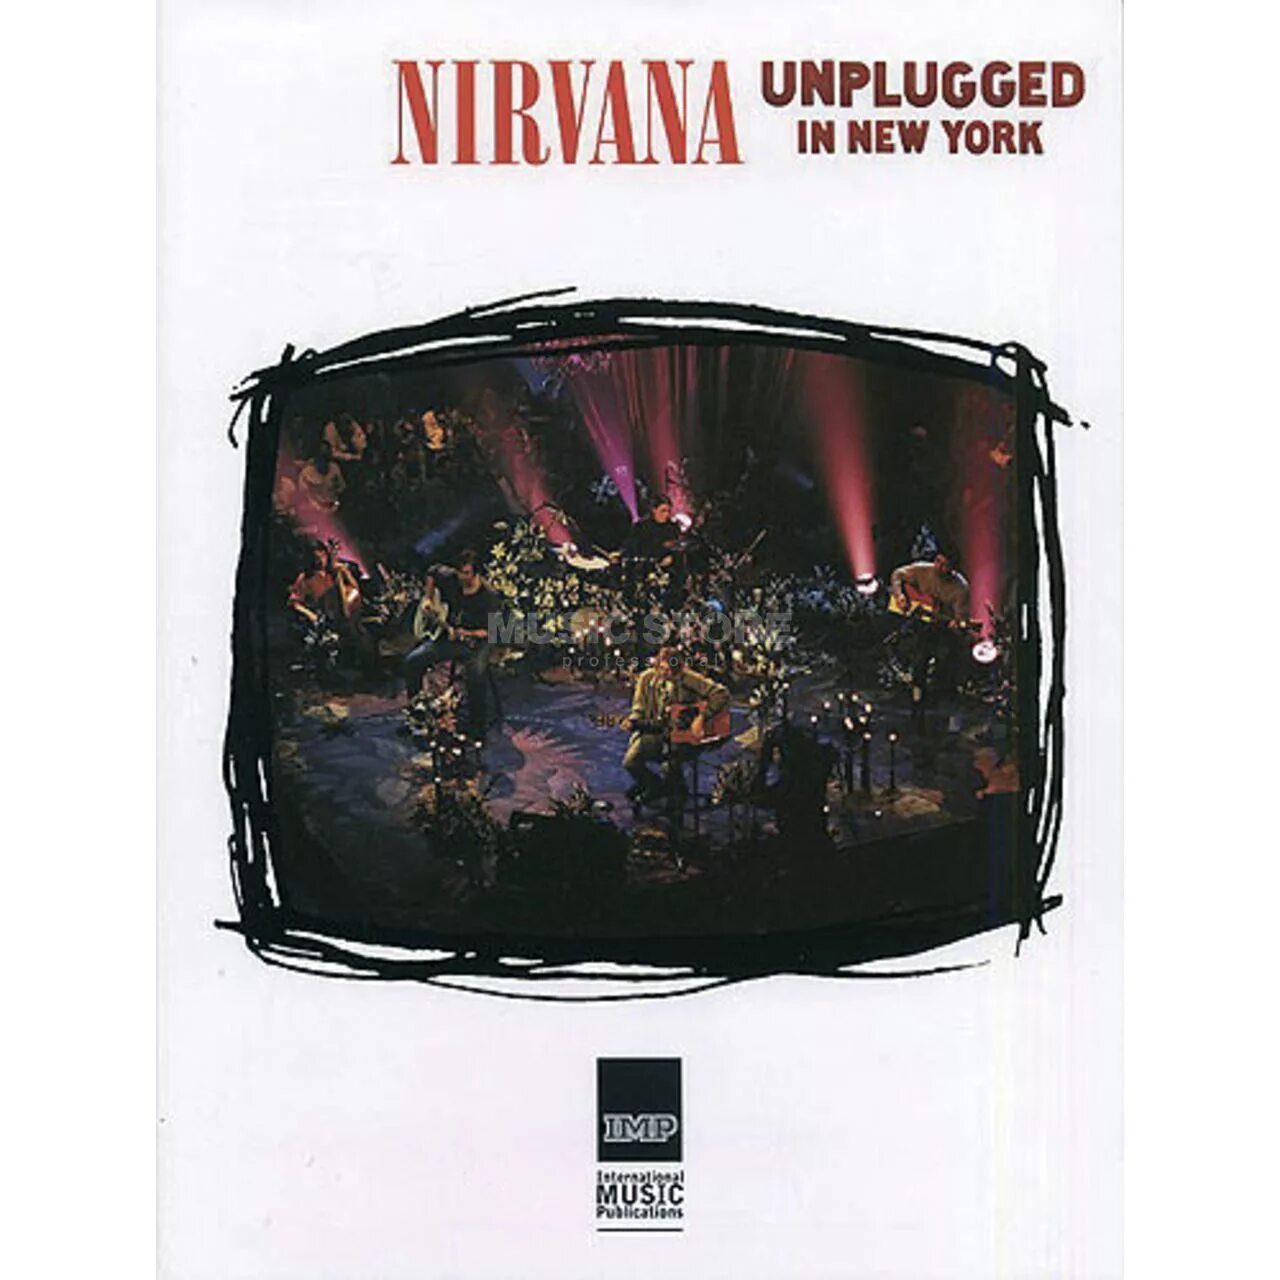 Nirvana mtv unplugged. Nirvana MTV Unplugged in New York обложка. MTV Unplugged Nirvana обложка. Nirvana MTV Unplugged in New York 1994. Nirvana Unplugged in New York обложка альбома.